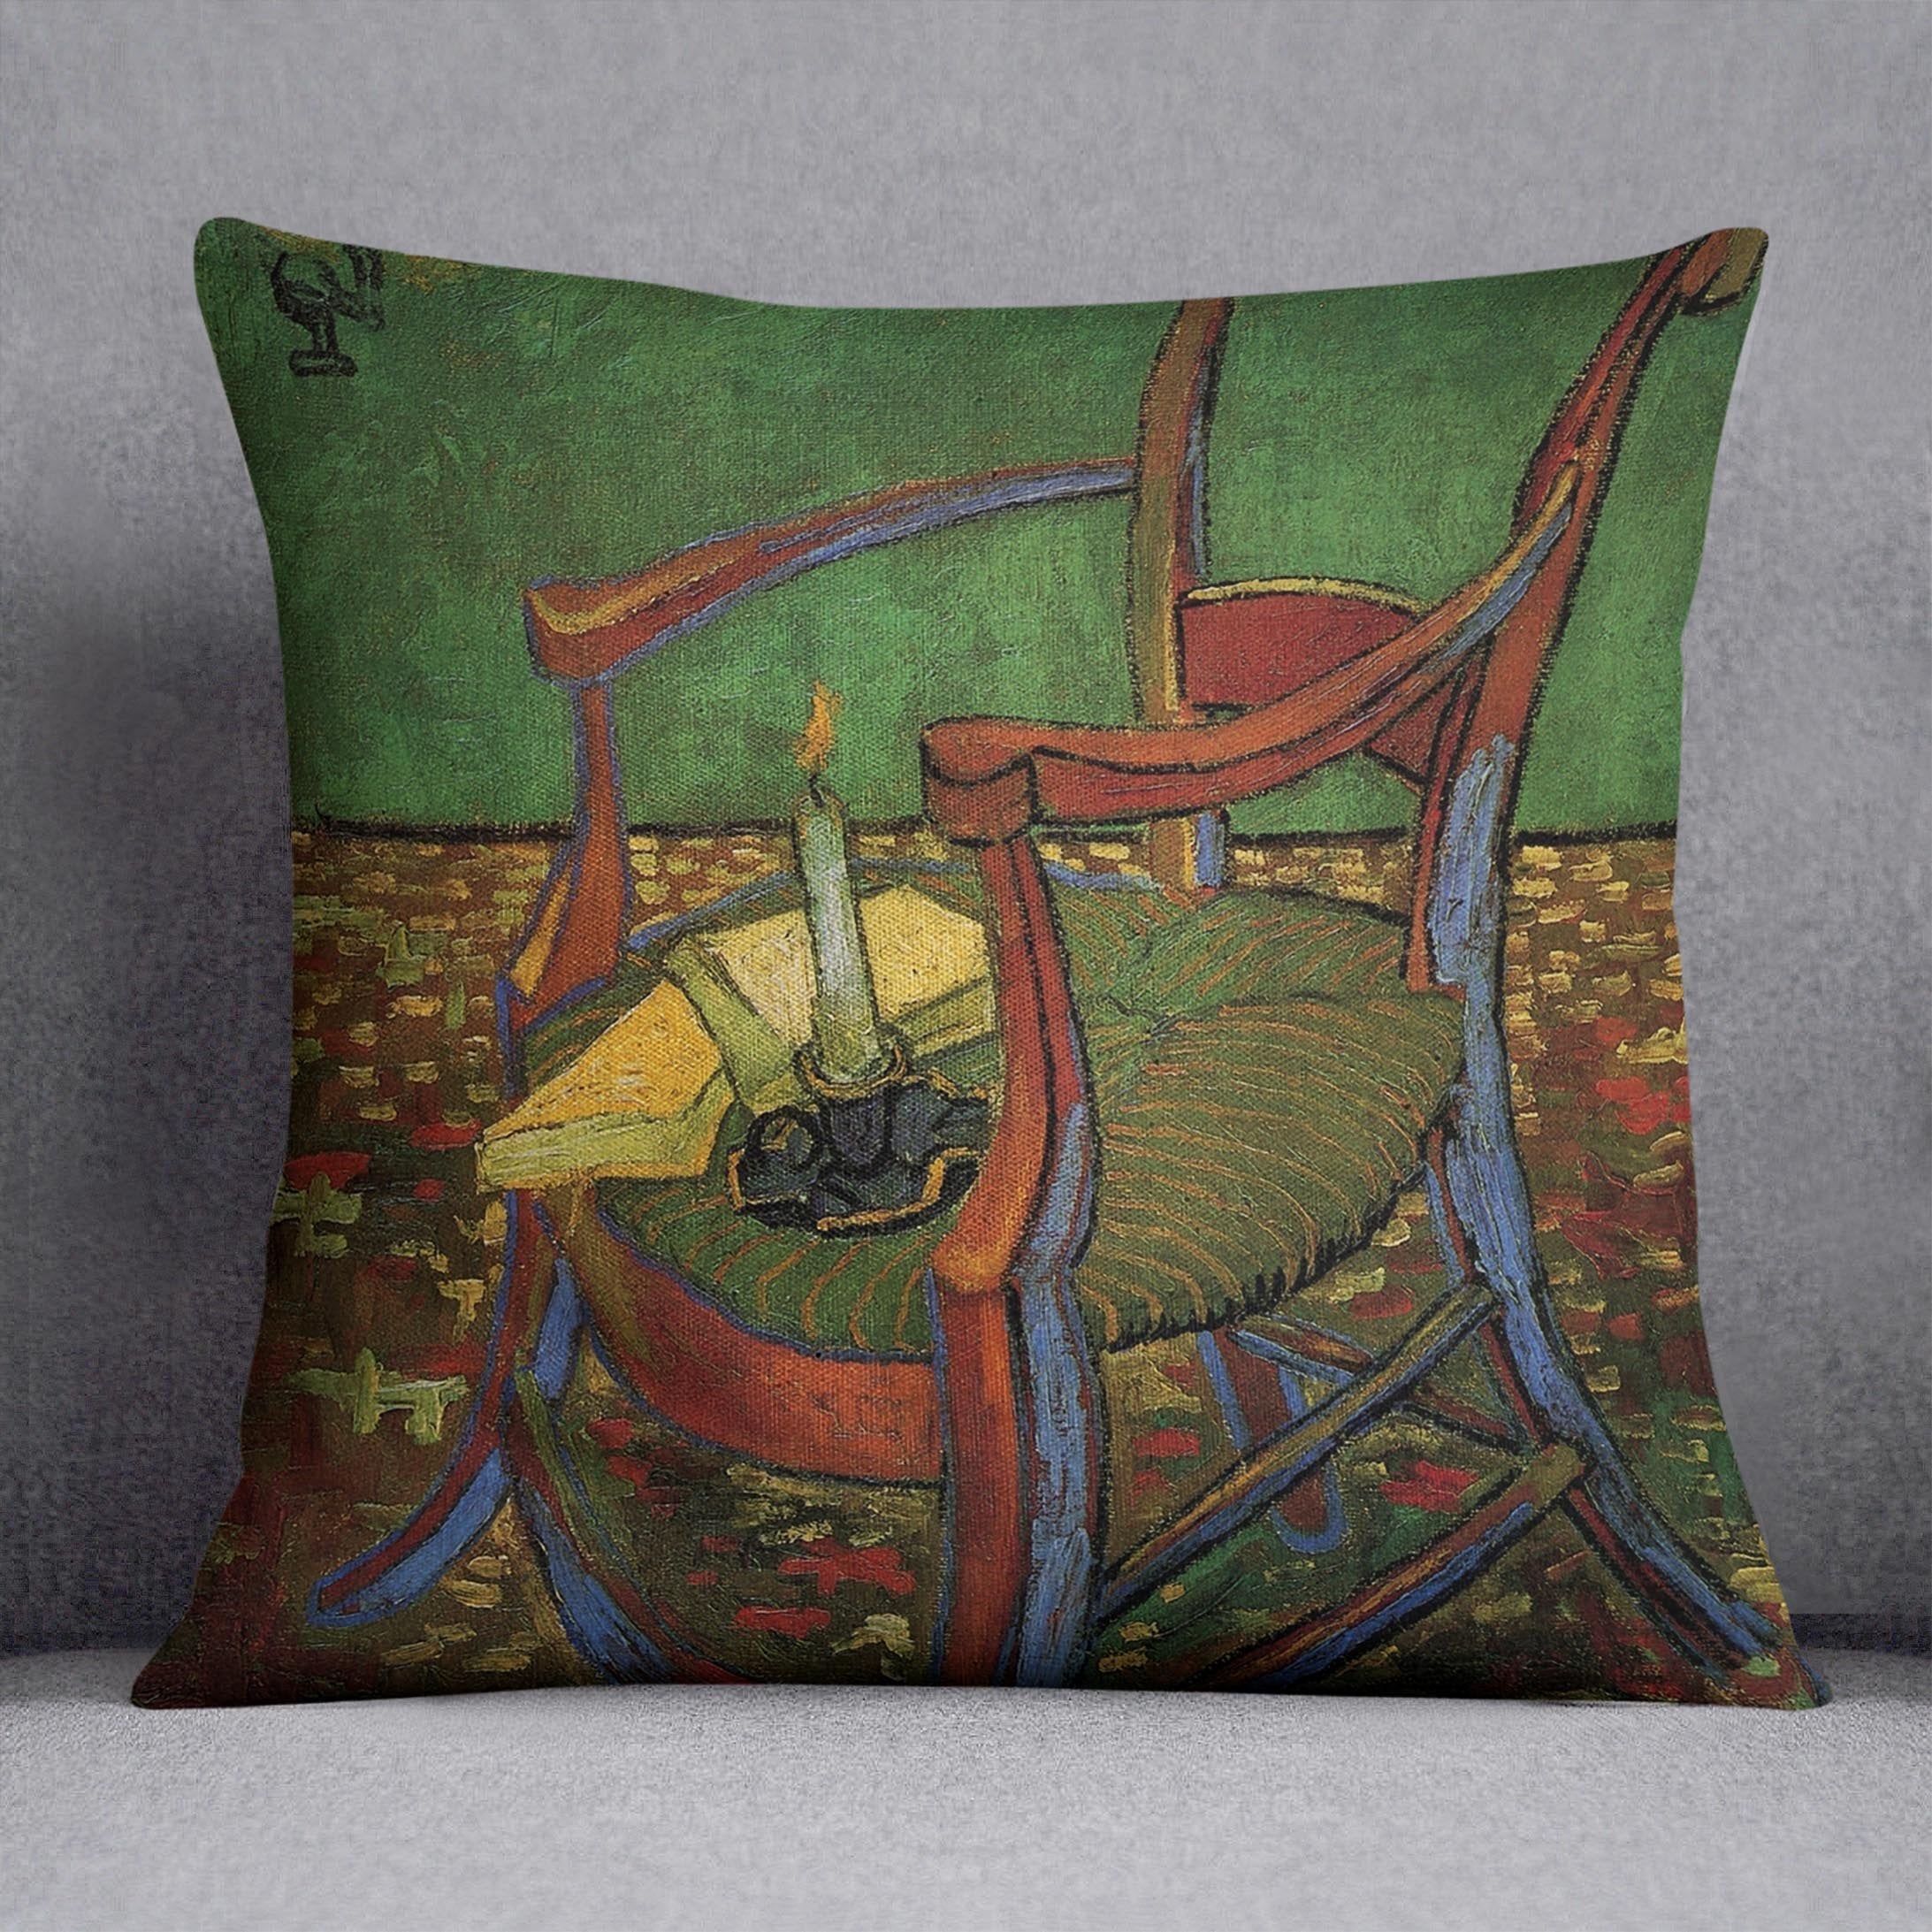 Paul Gauguin's Armchair by Van Gogh Throw Pillow